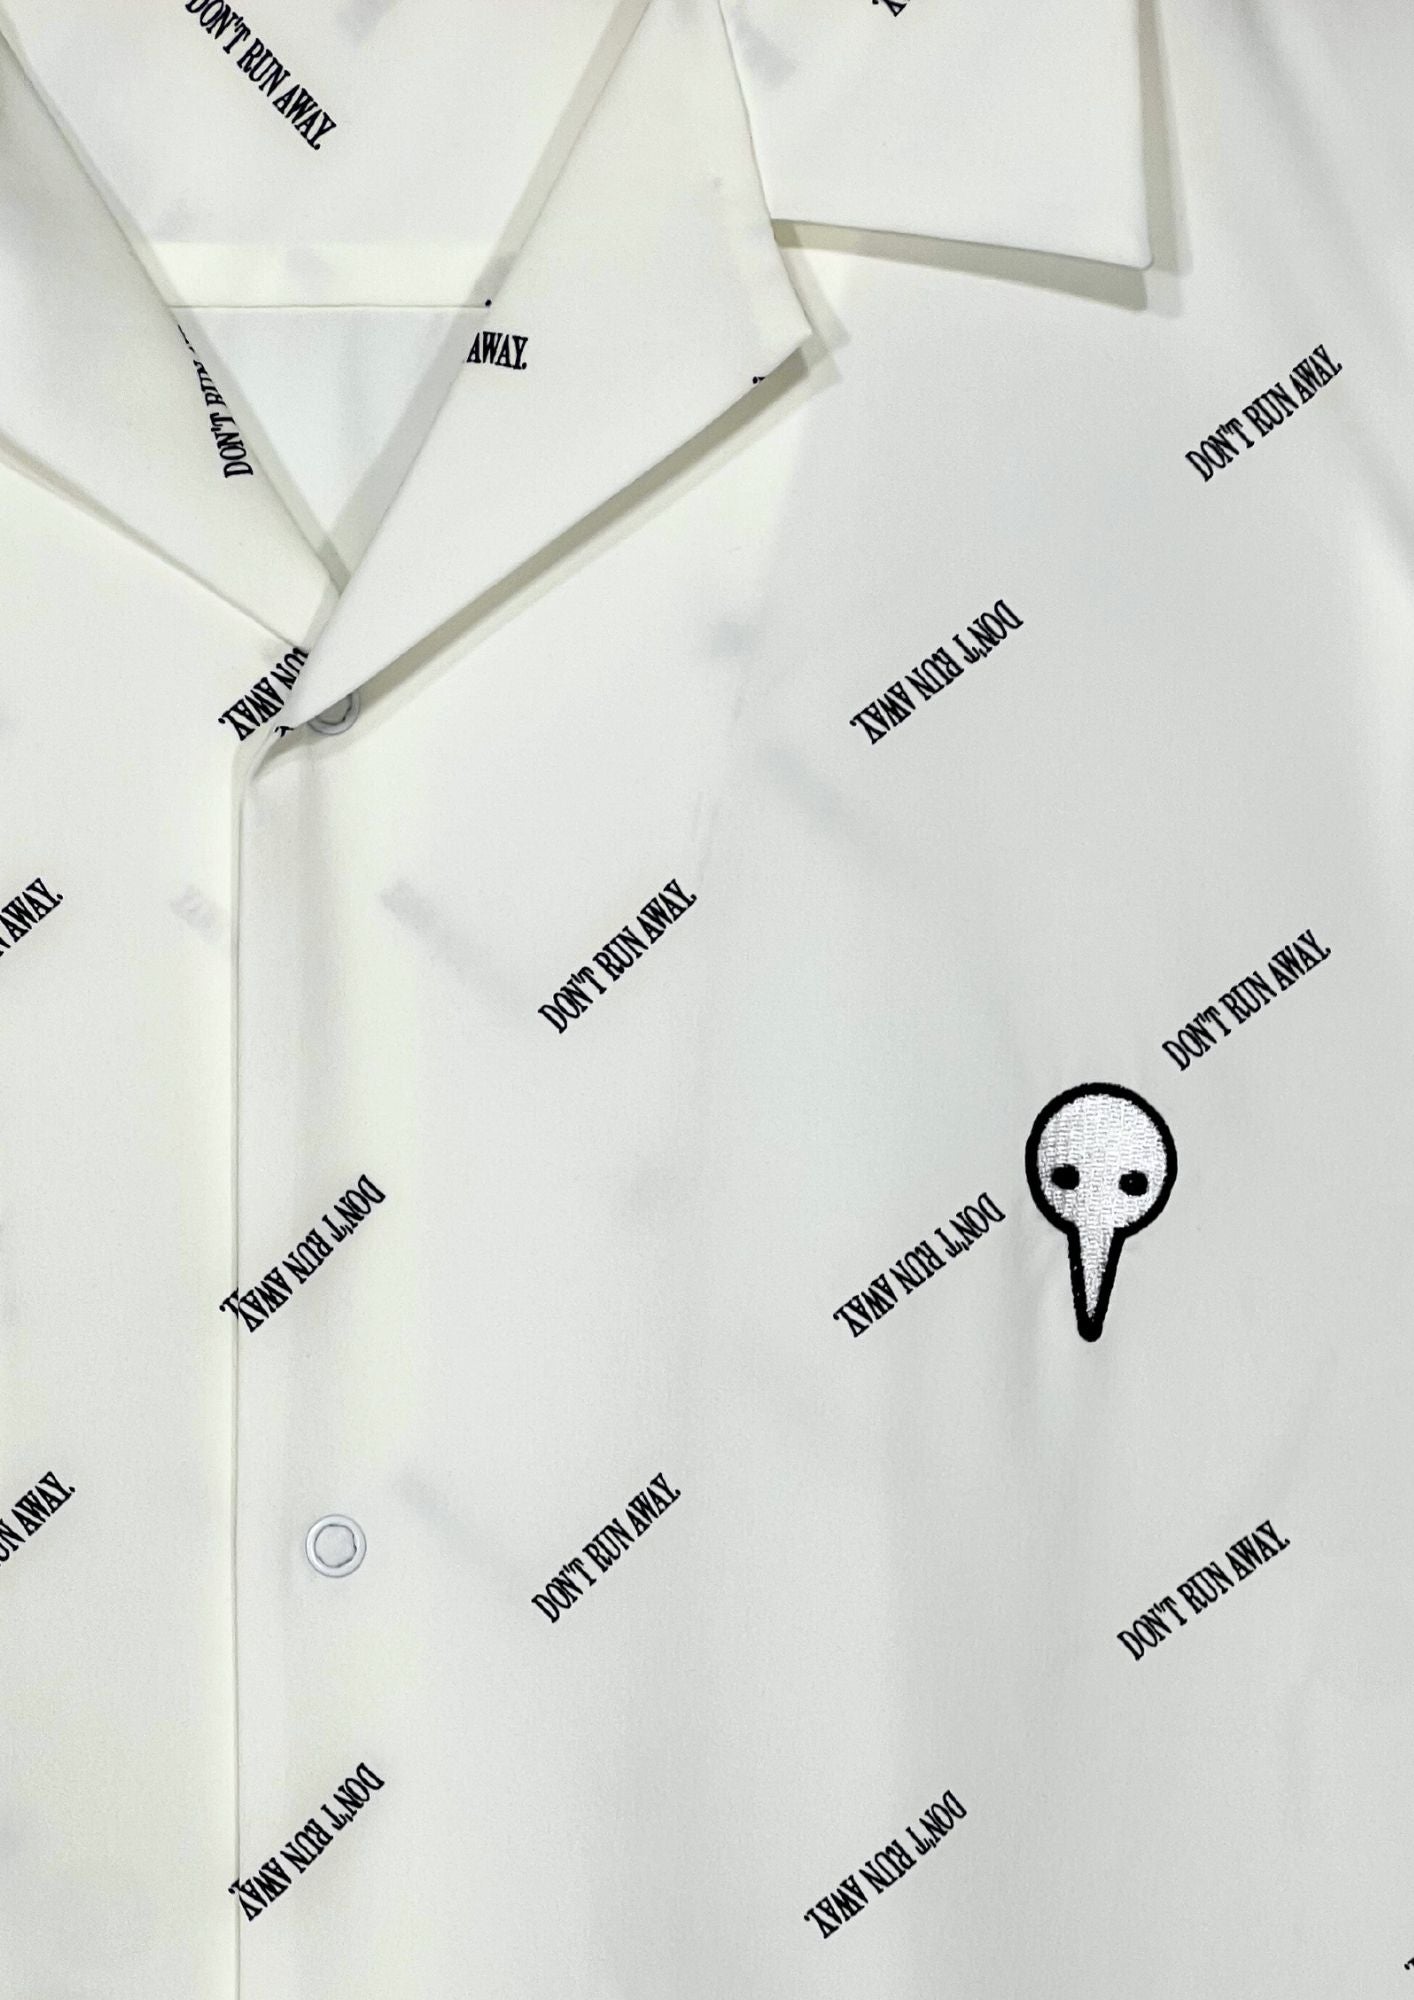 2020 Neon Genesis Evangelion  x GU Don't Run Away Button-up S/S Shirts